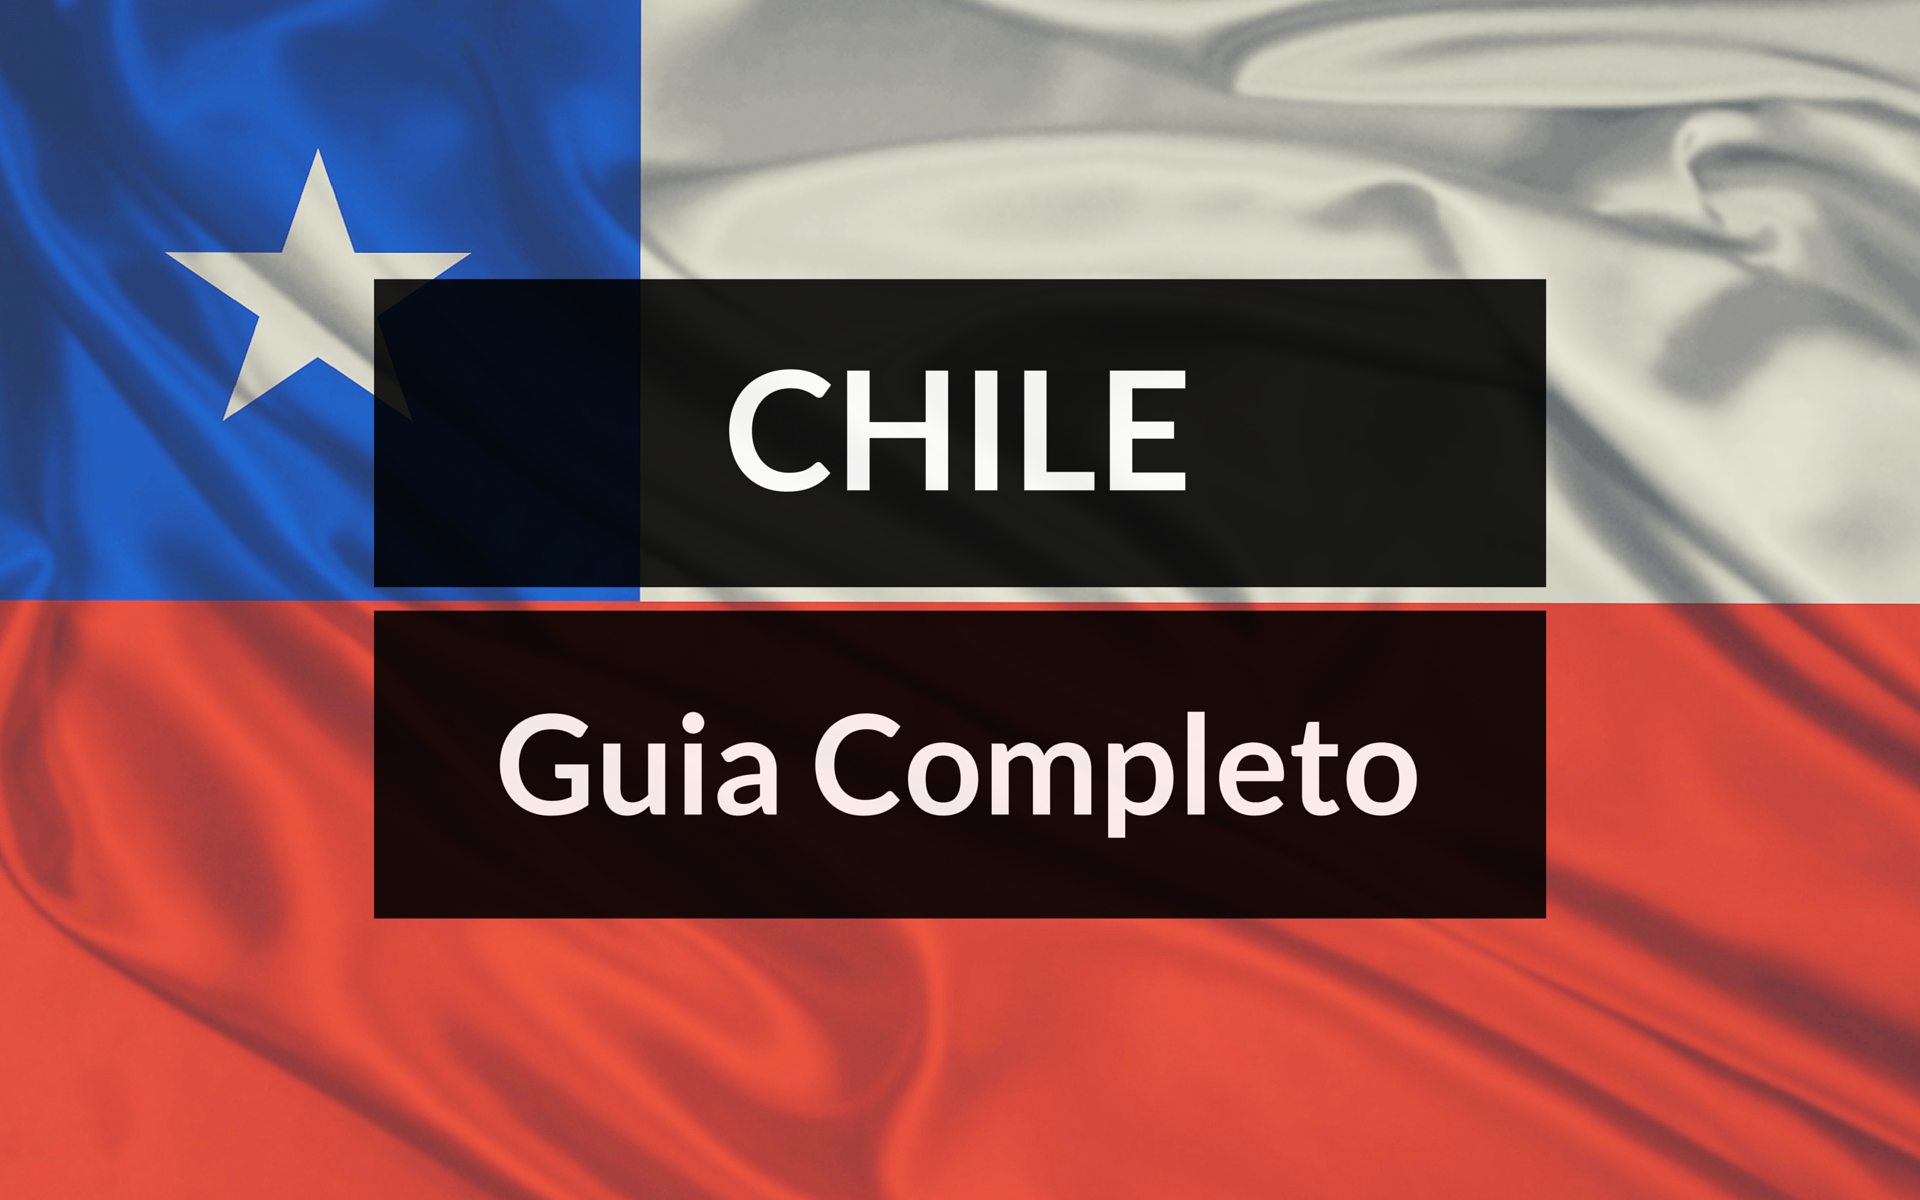 GUI-COMPLETO-CHILE-E-SANTIAGO Guia Chile Completo! 